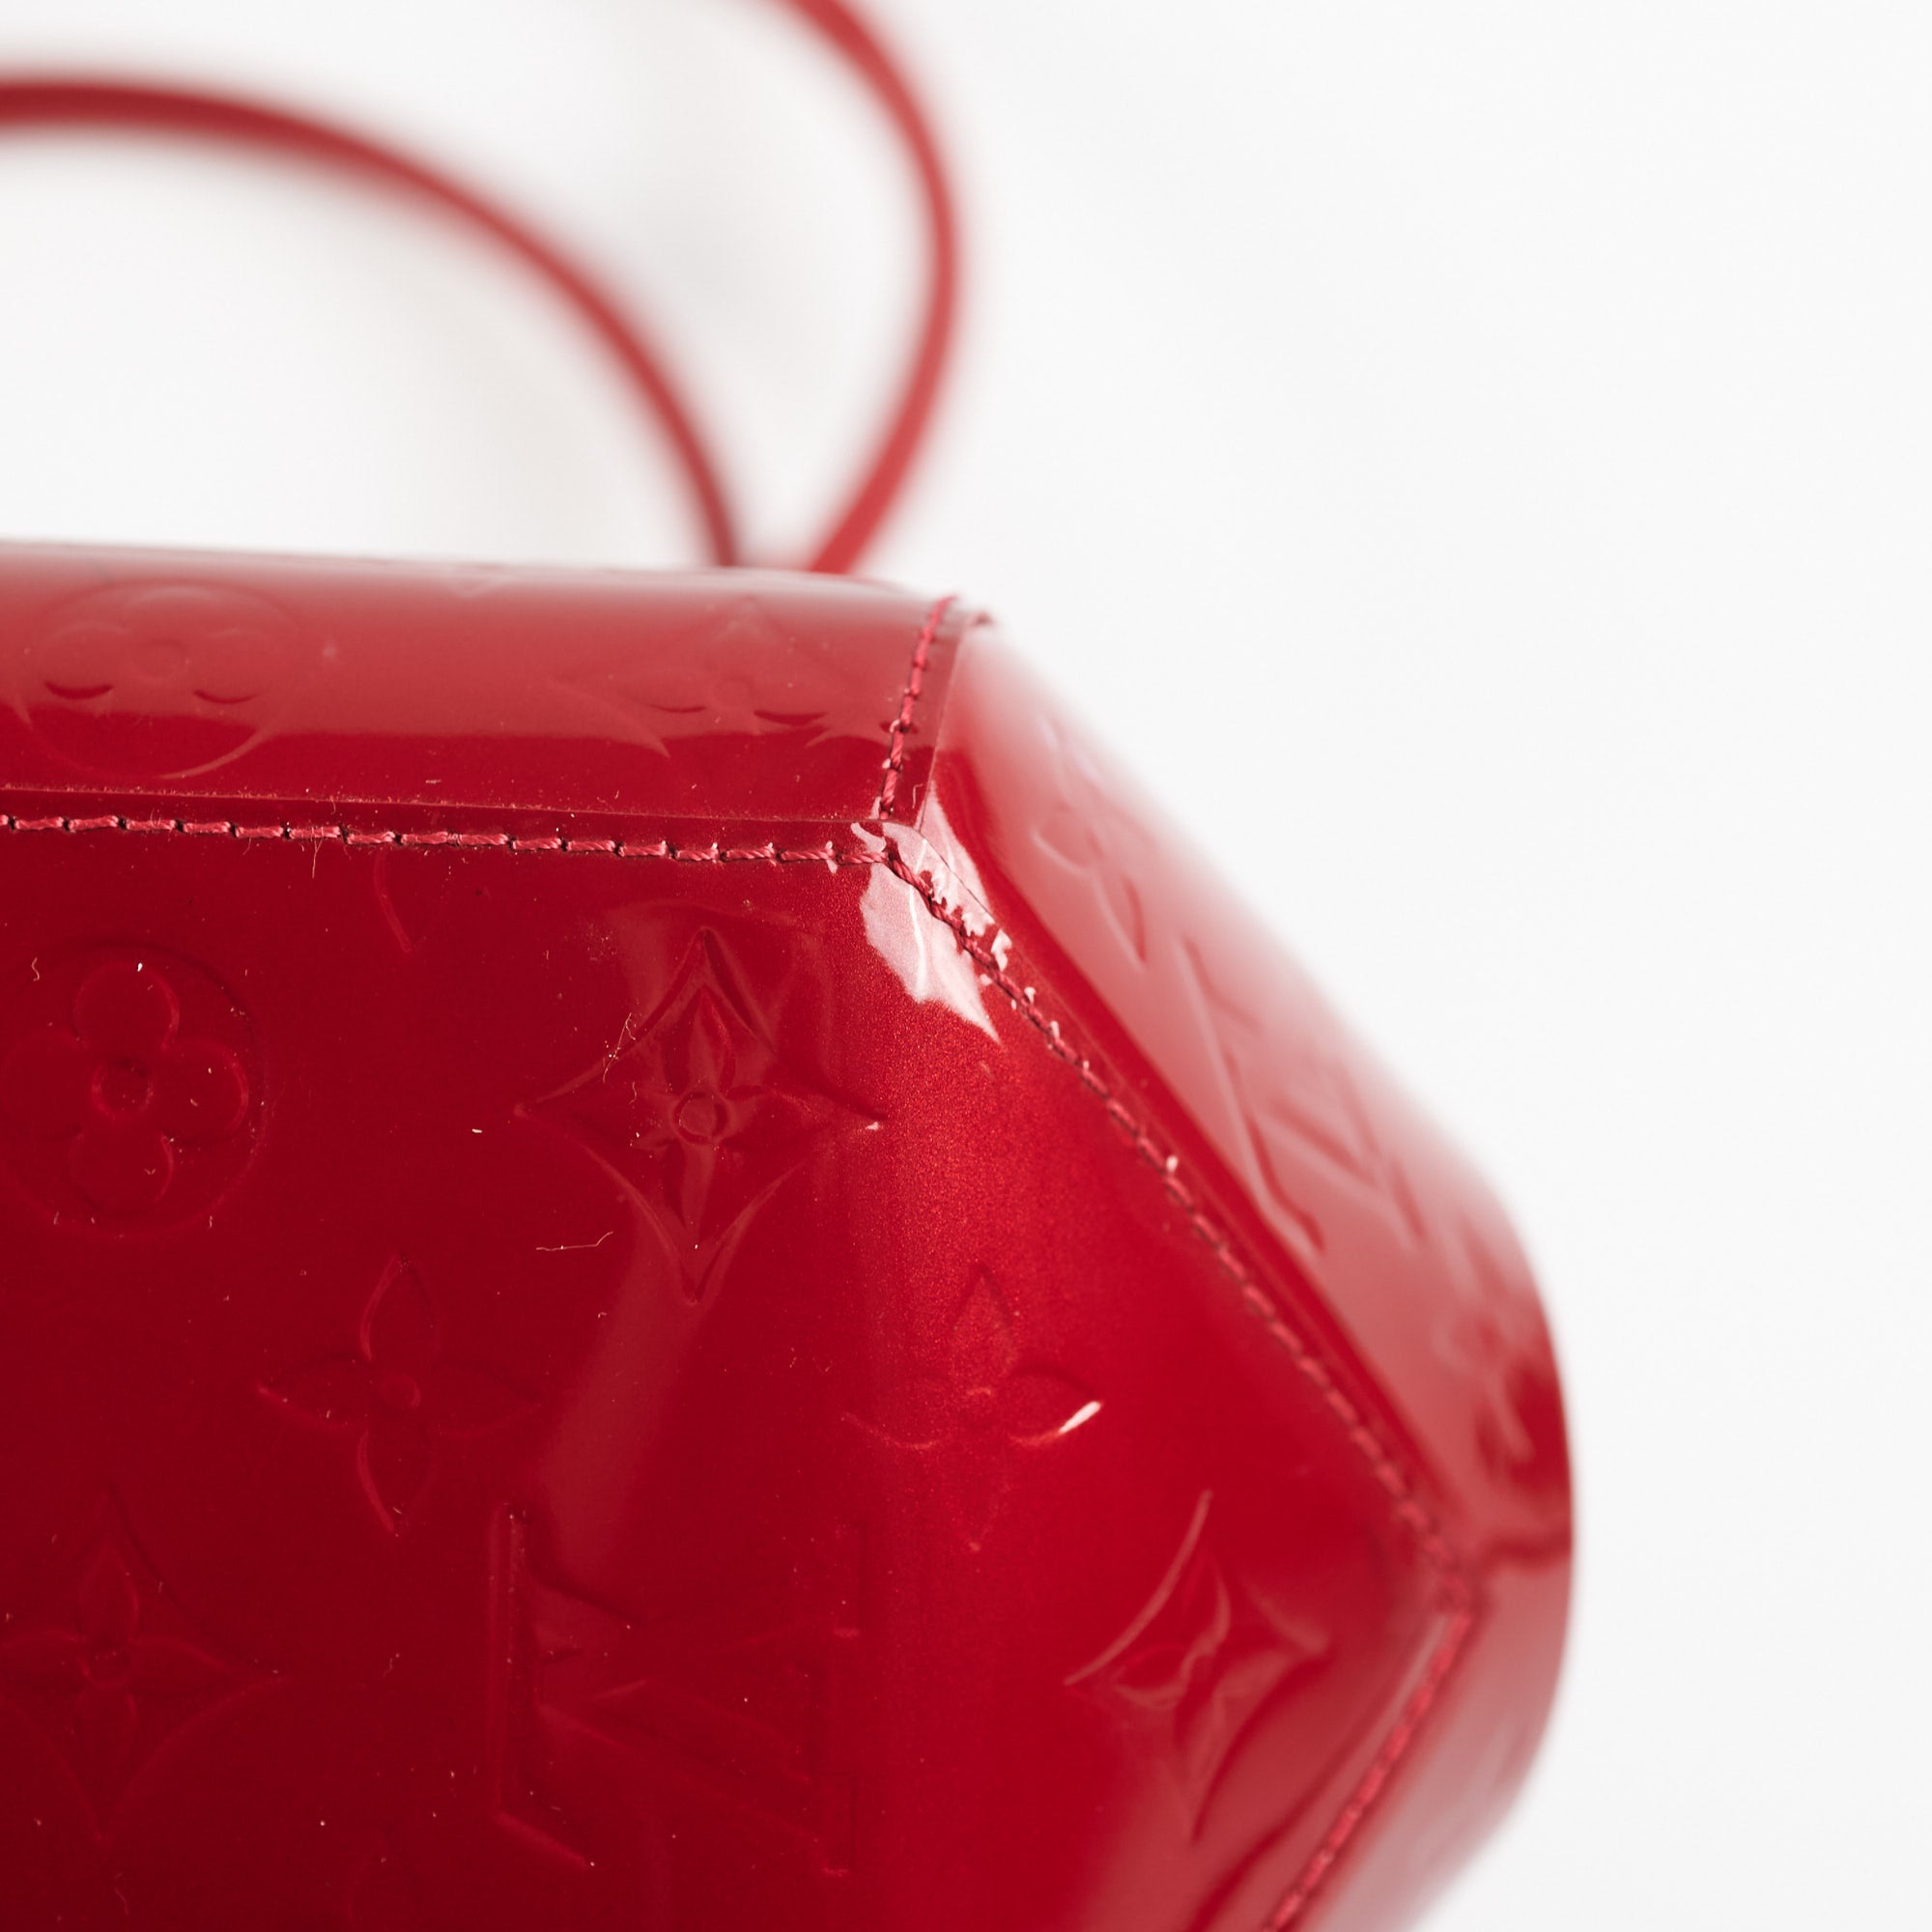 Louis Vuitton Monogram Vernis Sherwood PM - Red Totes, Handbags - LOU747346